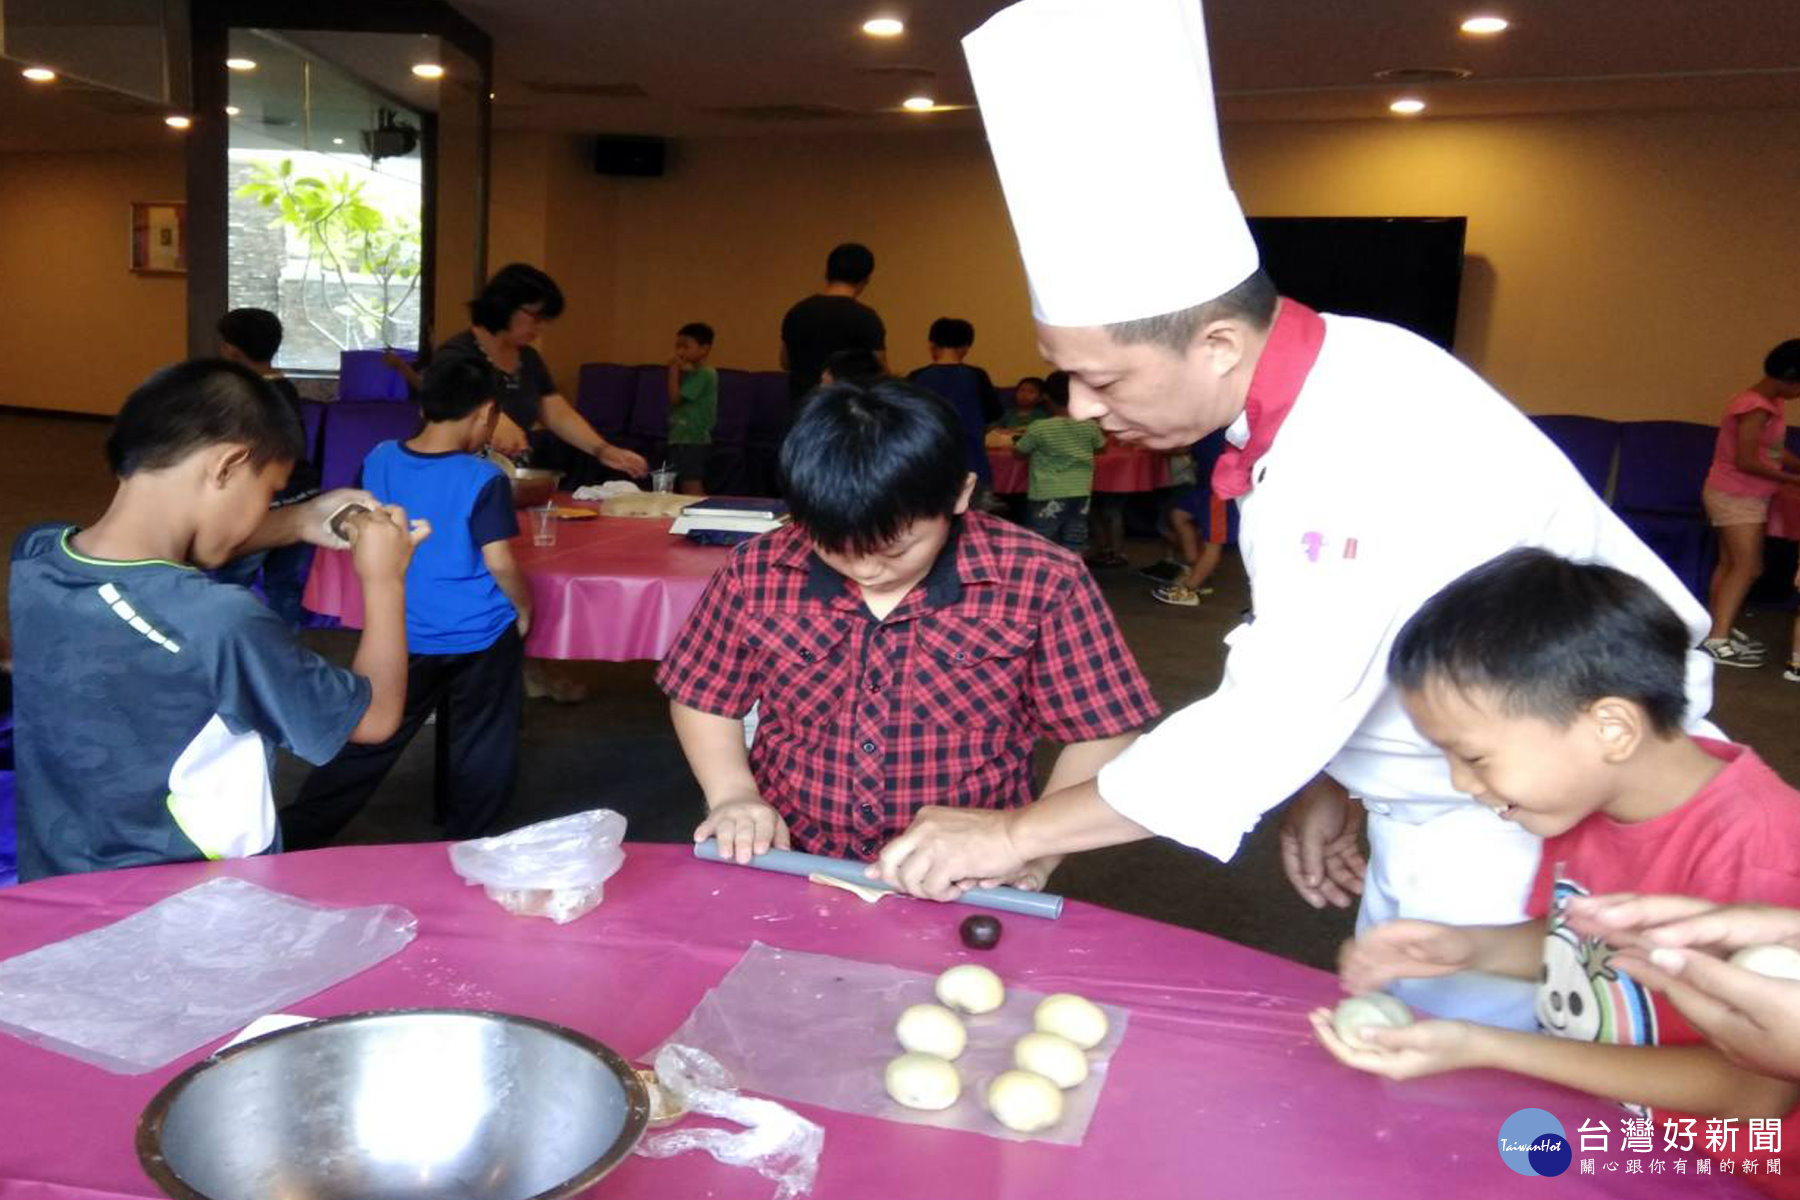 蓮潭會館西點主廚盧保吉教導小朋友製作蛋黃酥。